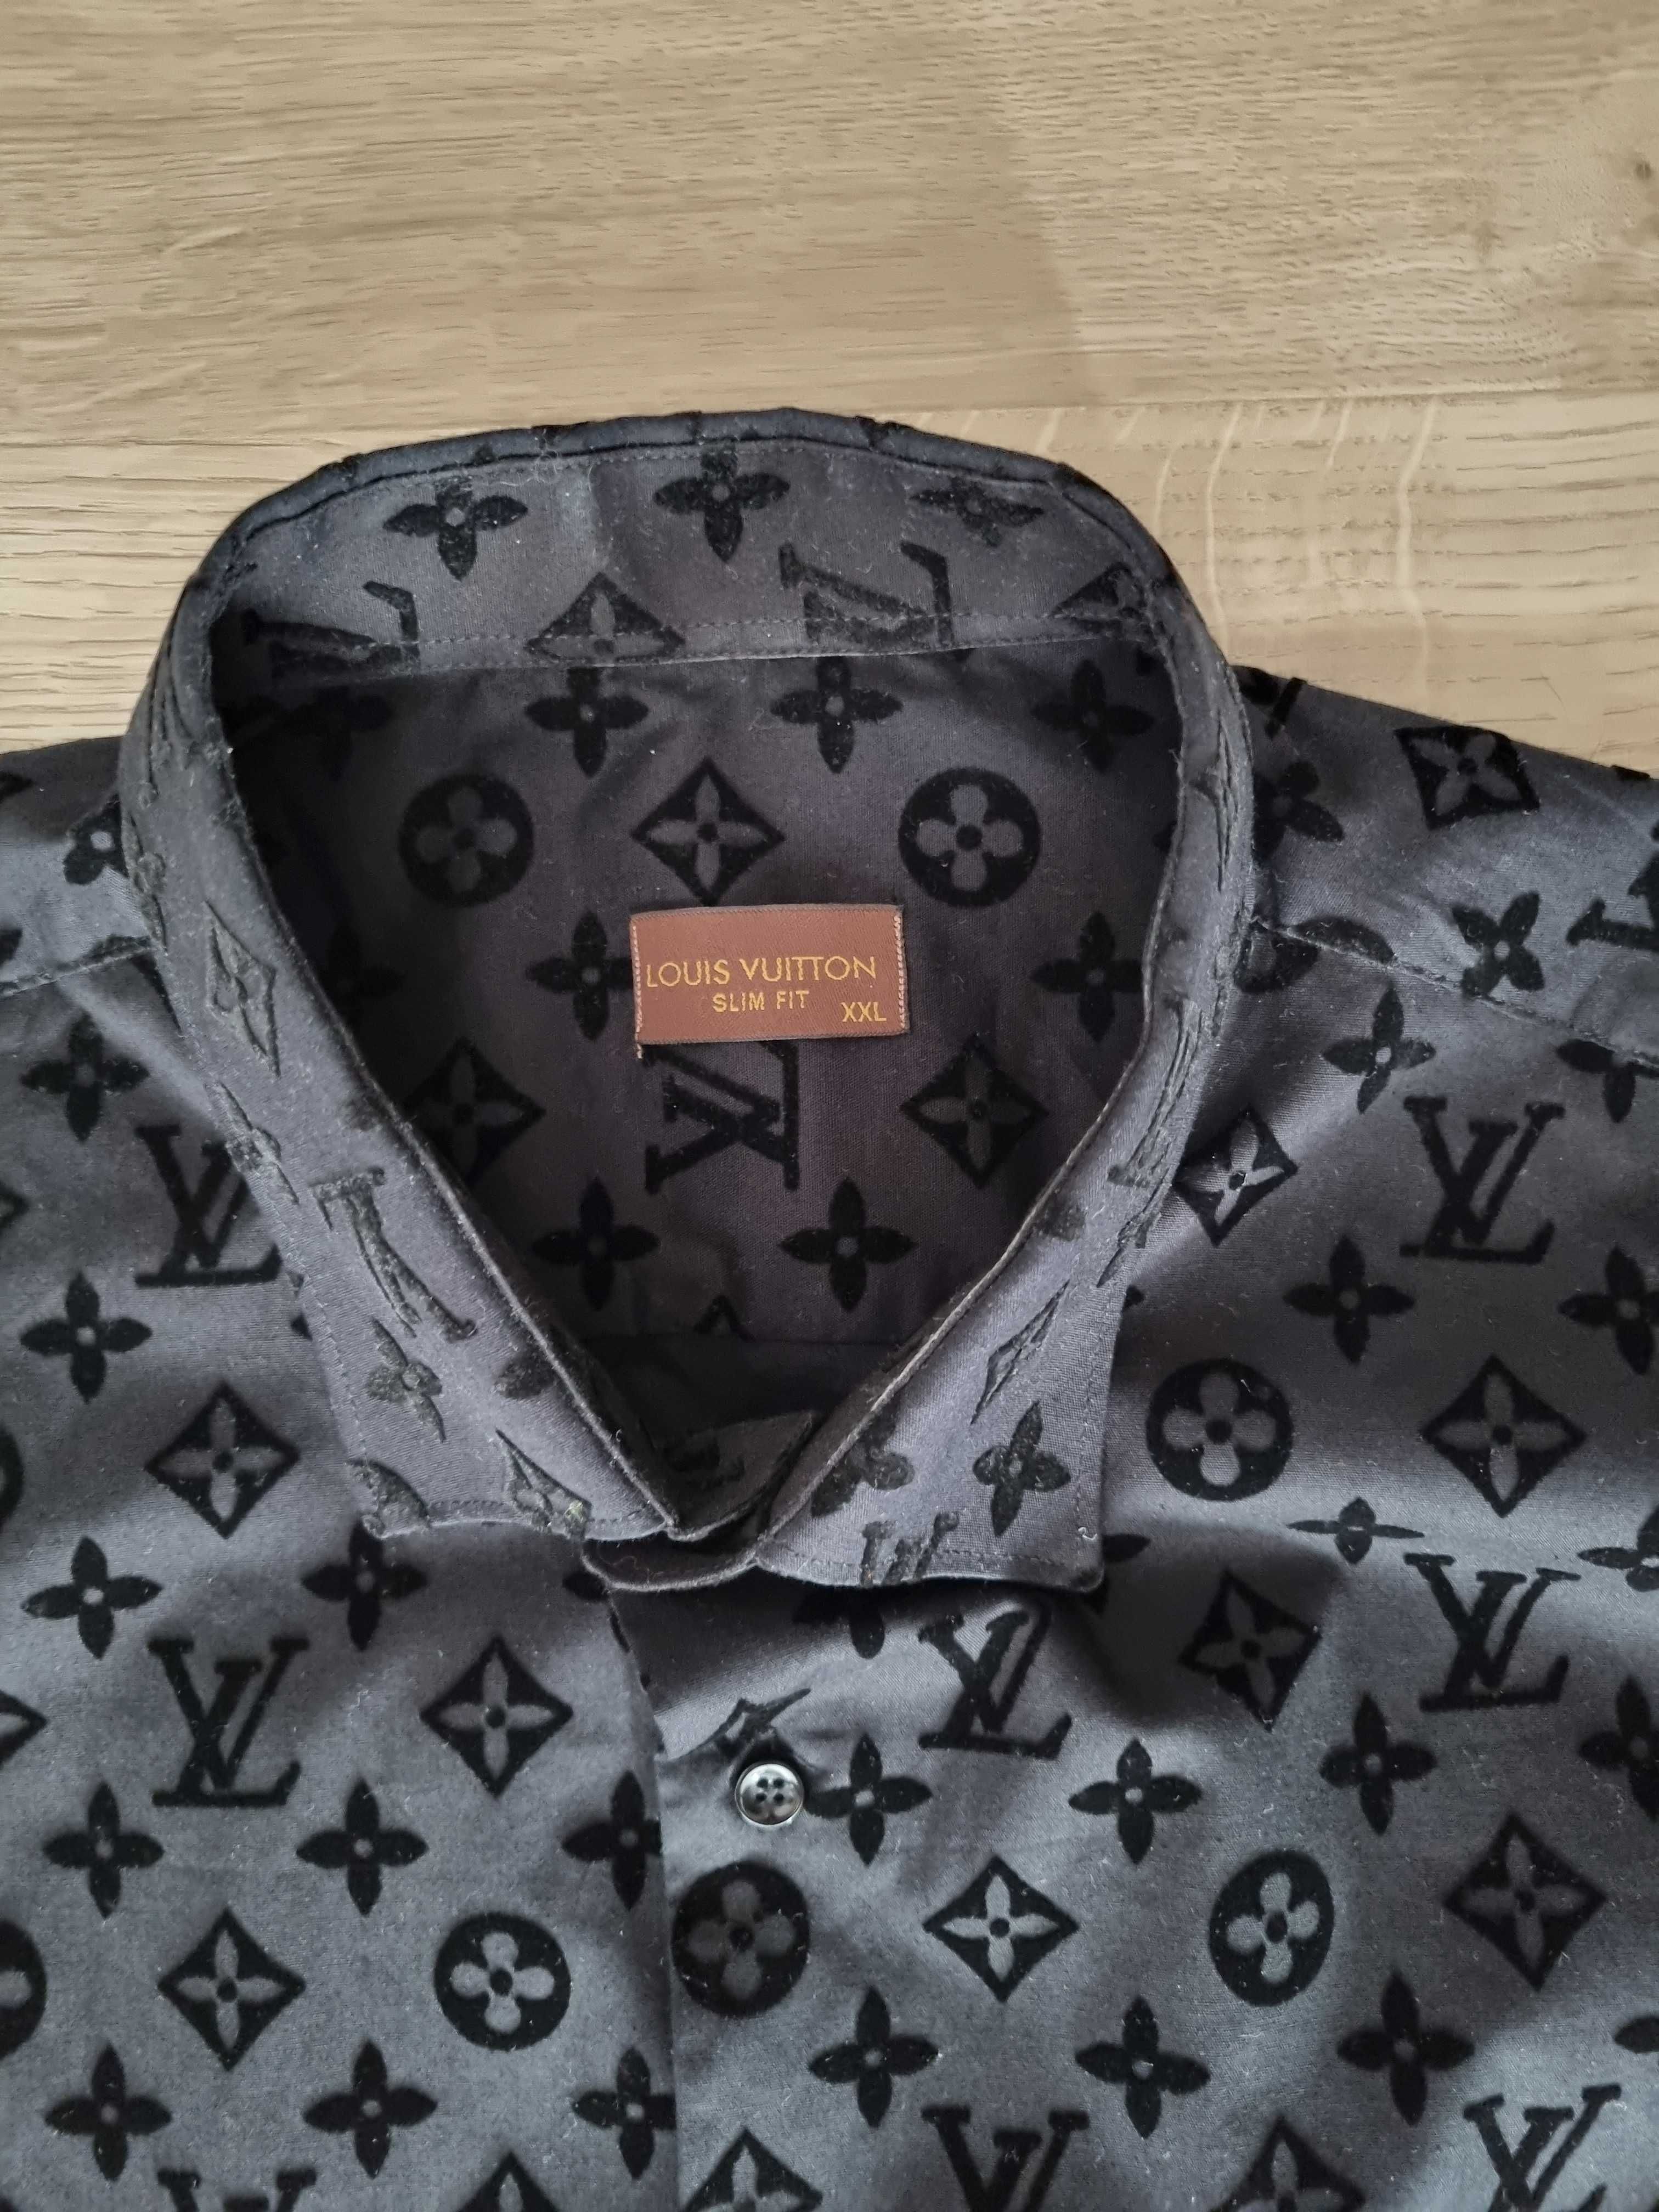 Męska elegancka koszula LV Louis Vuitton czarna rozmiar XXL jak NOWA